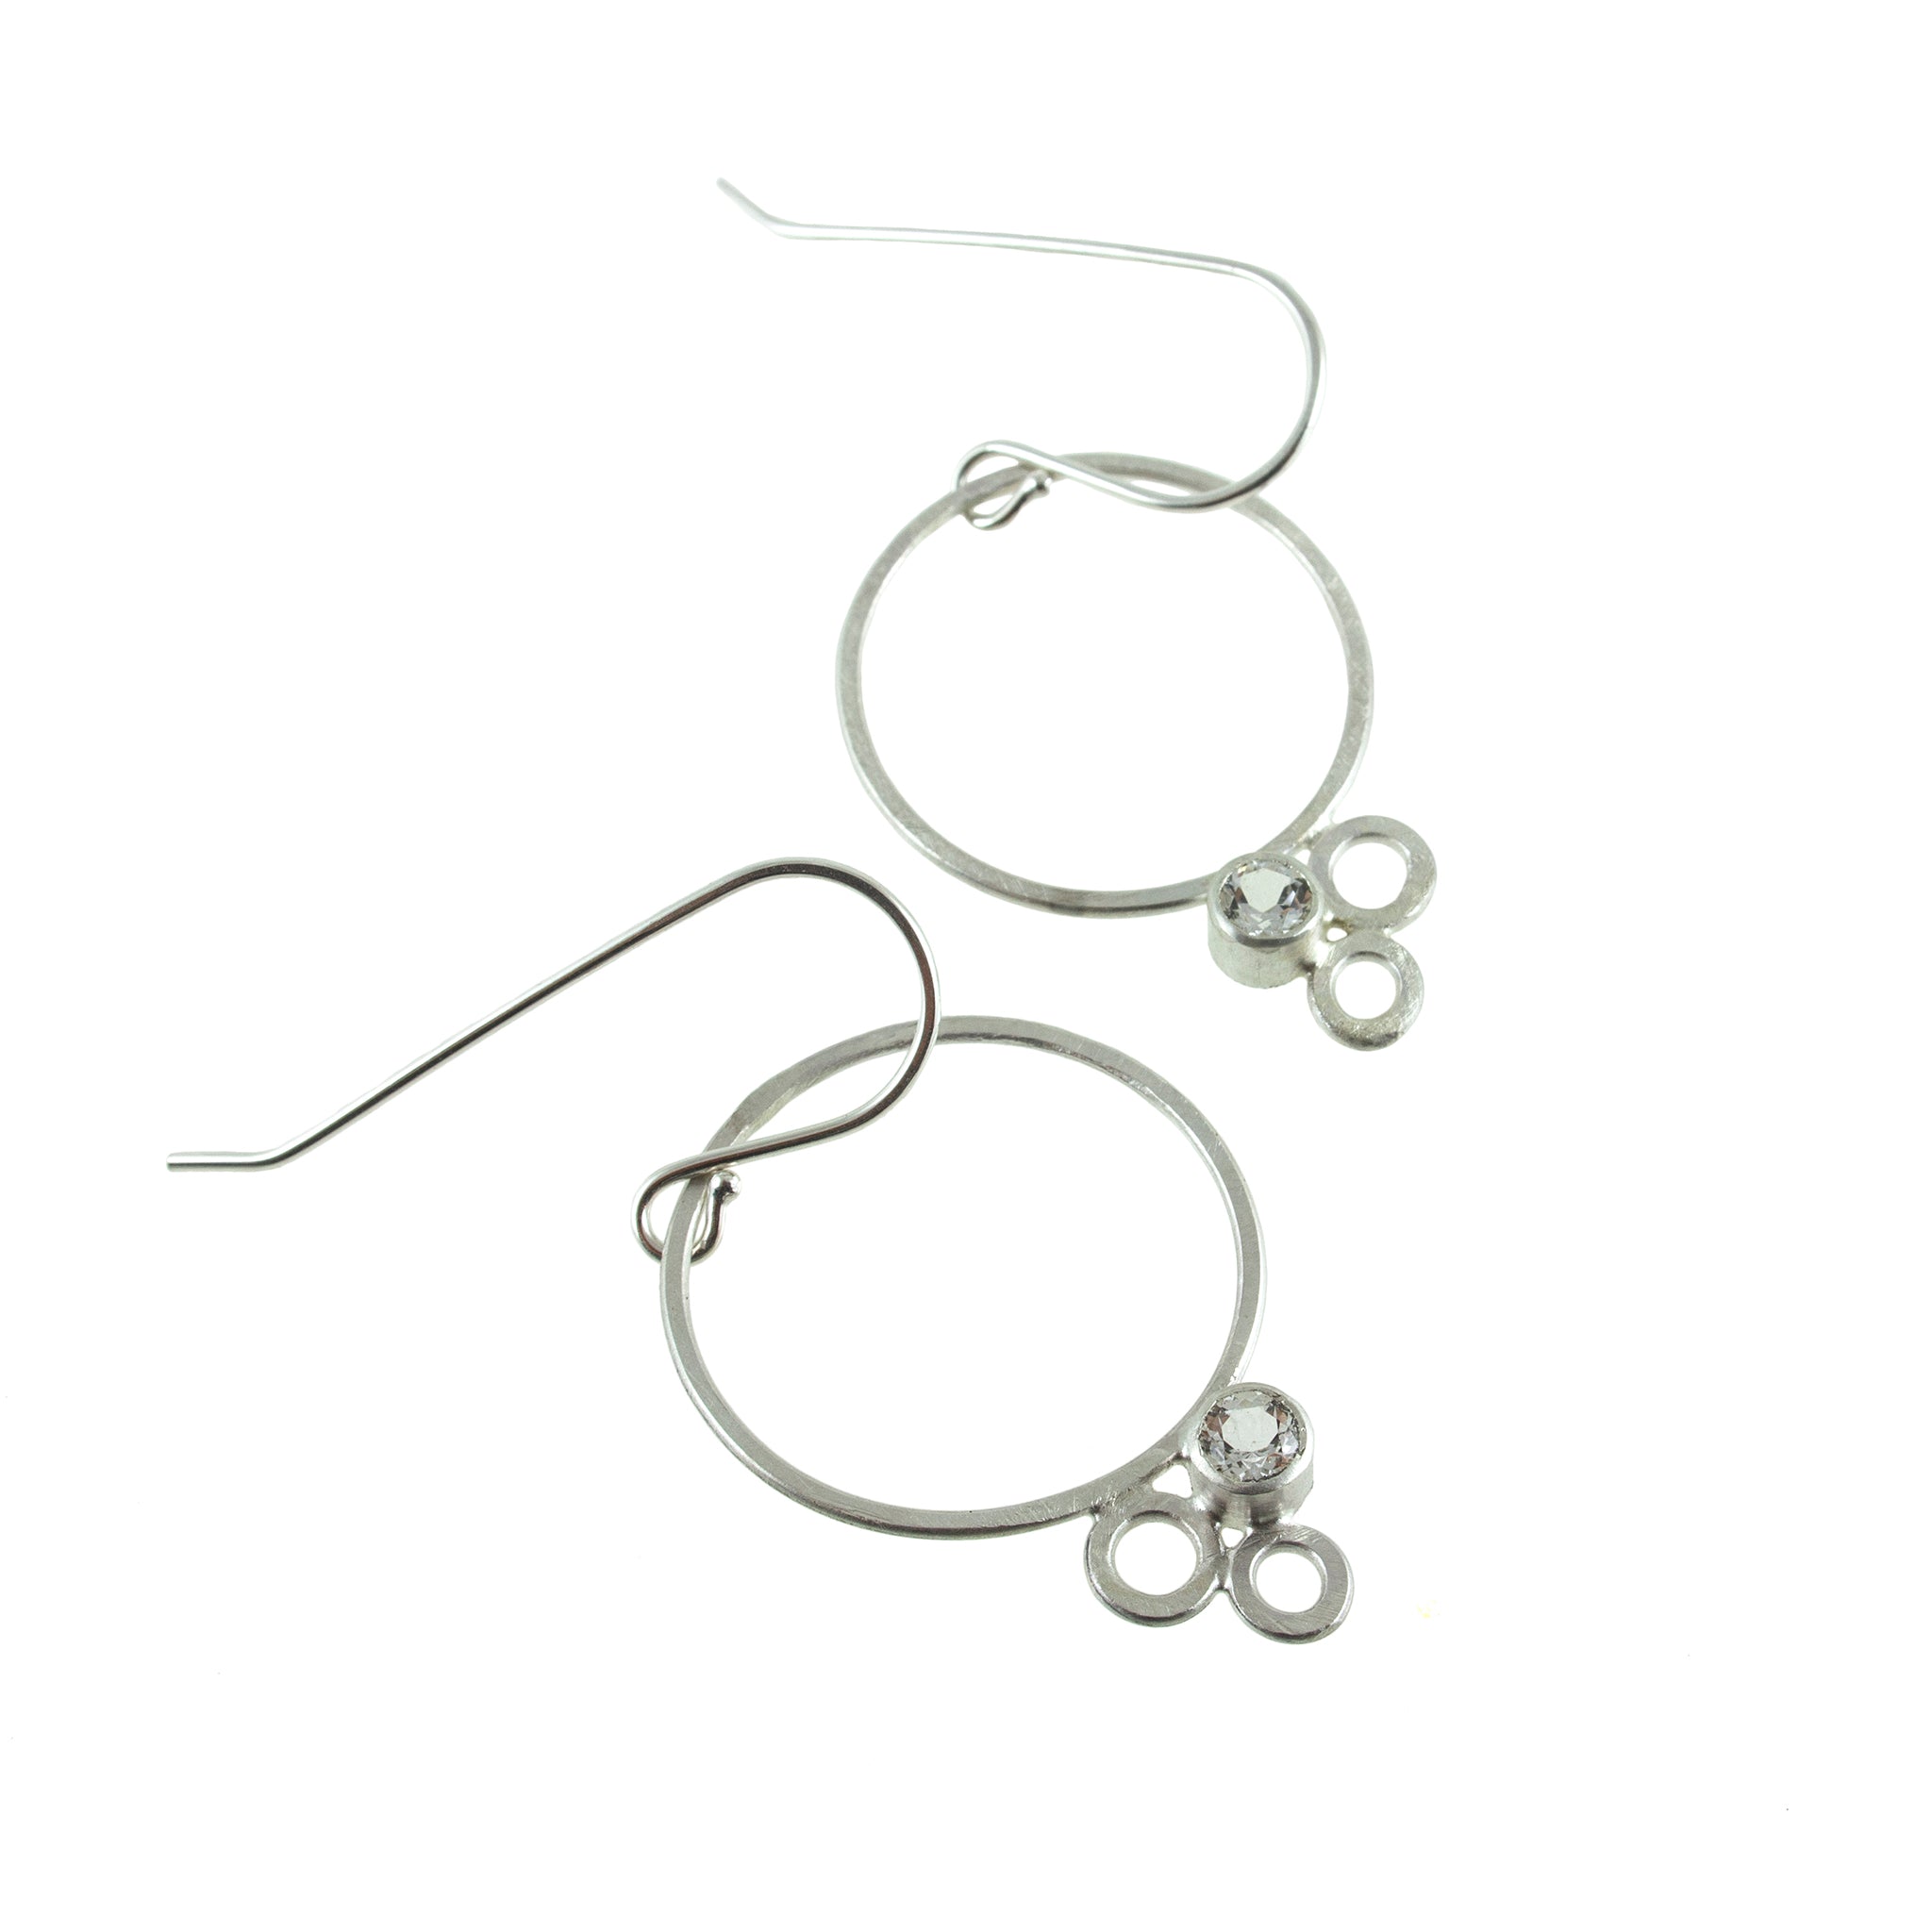 Sterling silver hoop earrings with gemstones by eko jewelry design, Martine